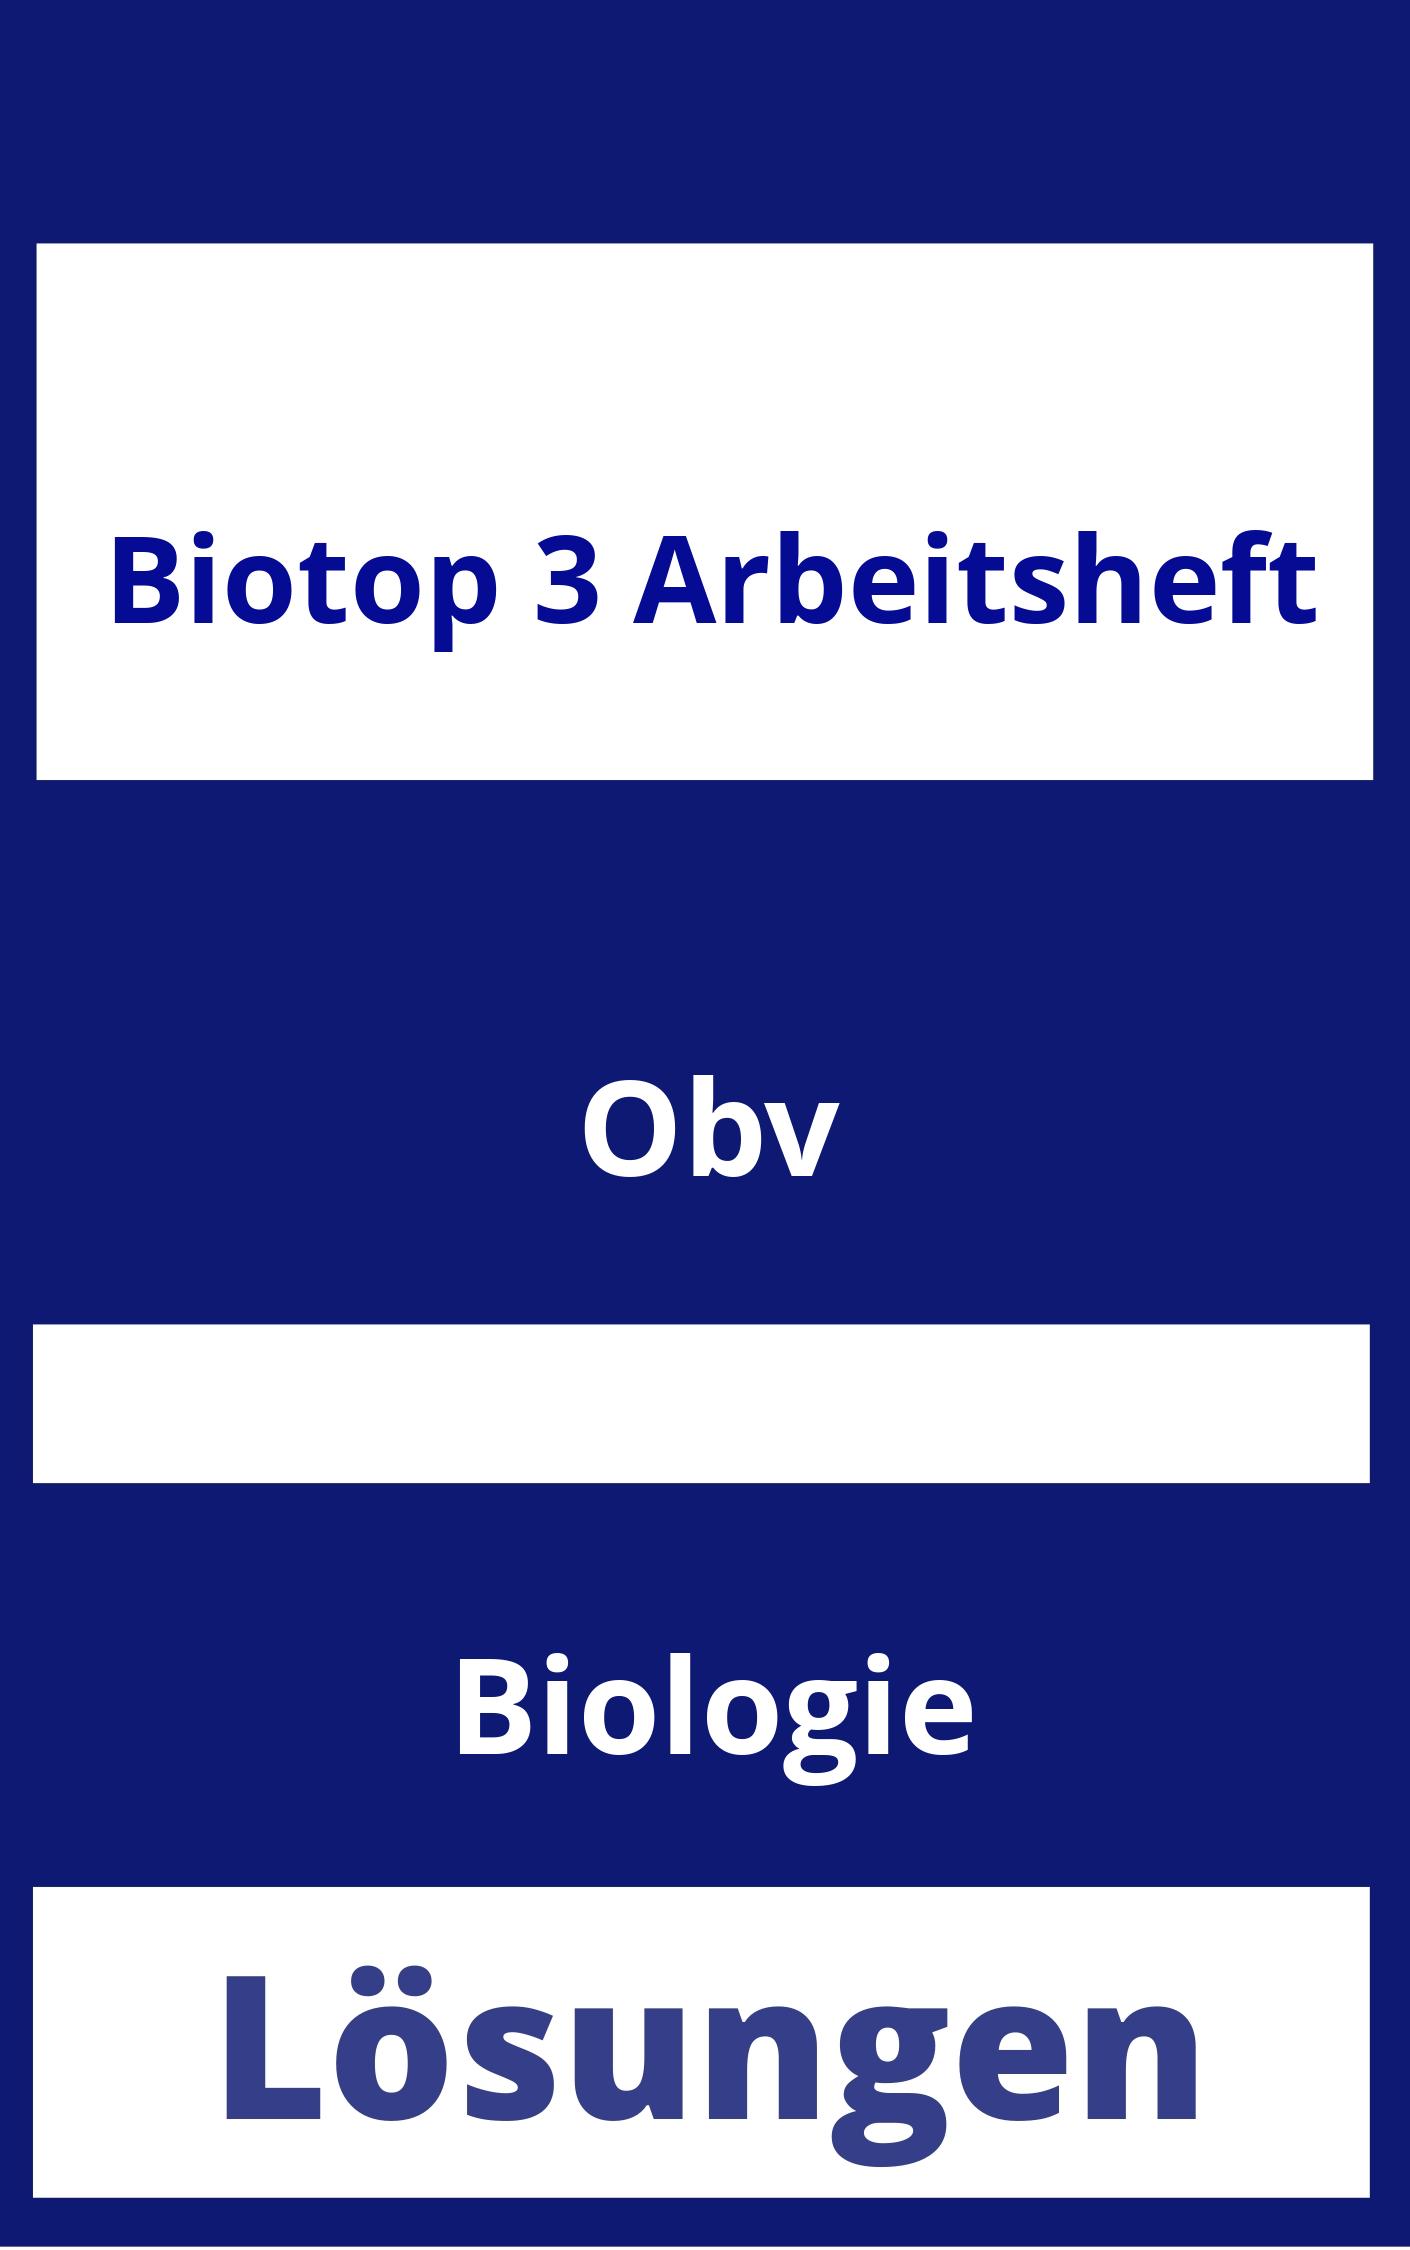 BioTop 3 Arbeitsheft Lösungen PDF